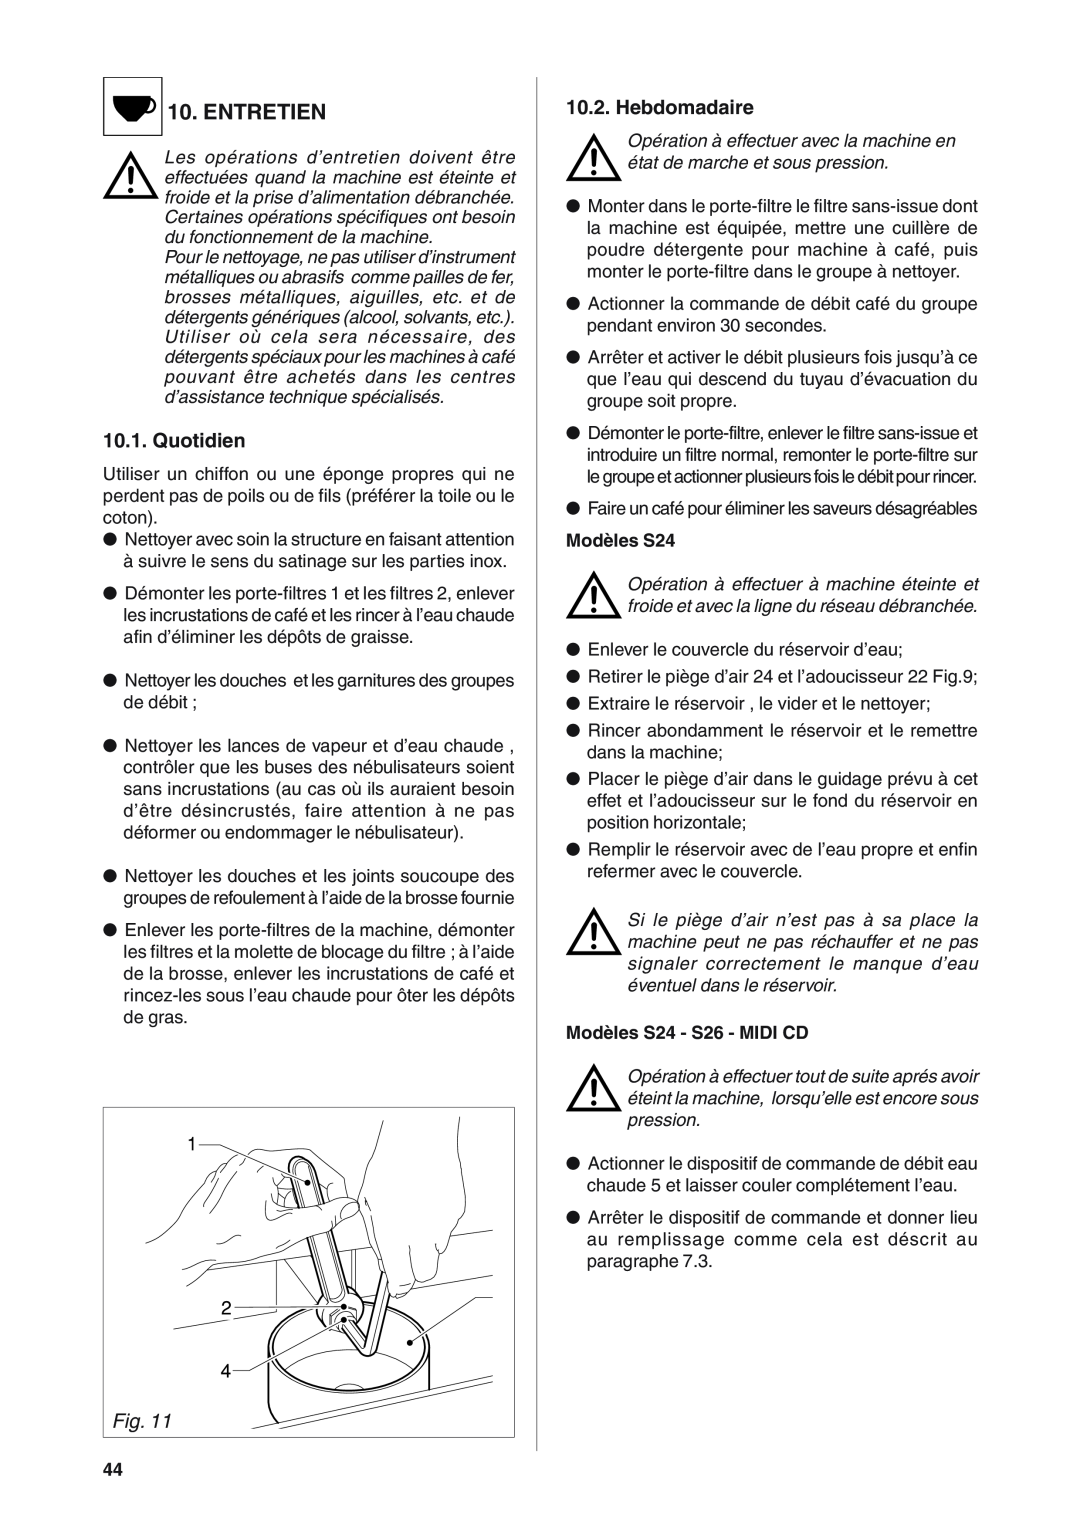 Rancilio S20 manual Entretien, Quotidien, Hebdomadaire 